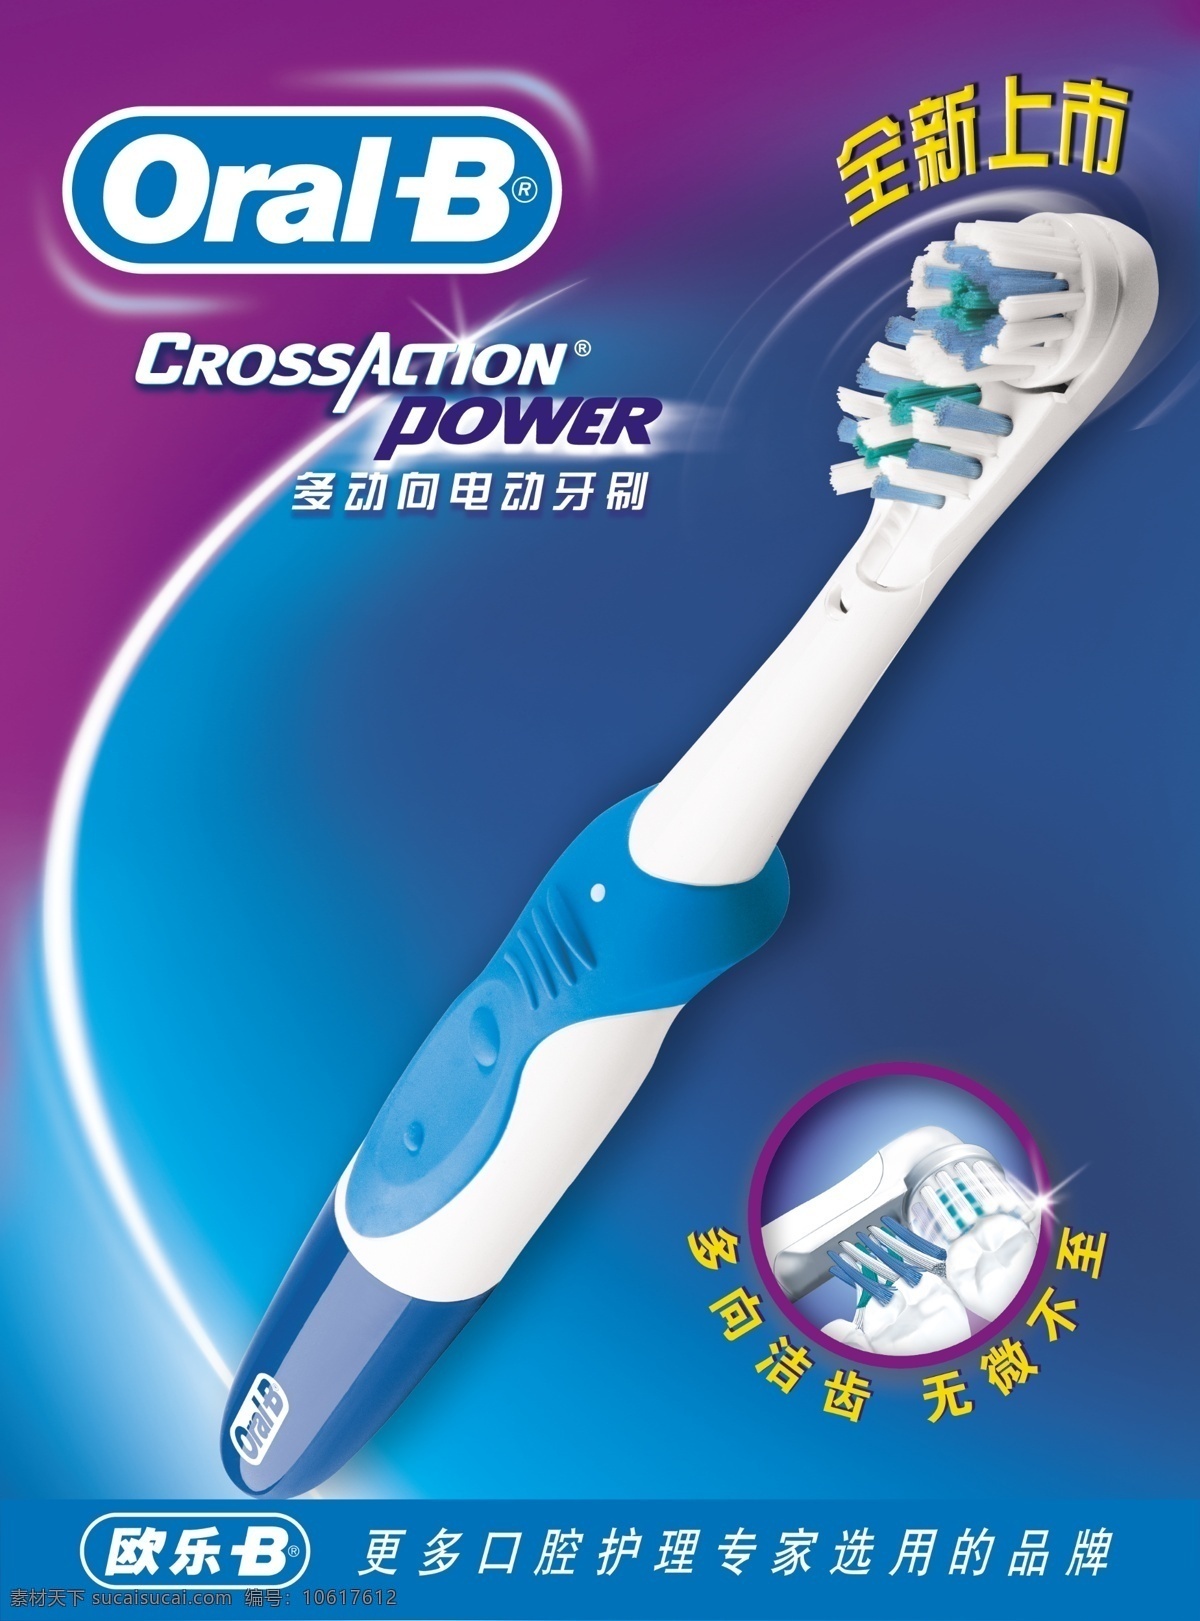 欧 乐 b 电动牙刷 牙刷 欧乐 oral 蓝色背景 全新上市 口腔护理 白光 洁齿 广告设计模板 国内广告设计 源文件库